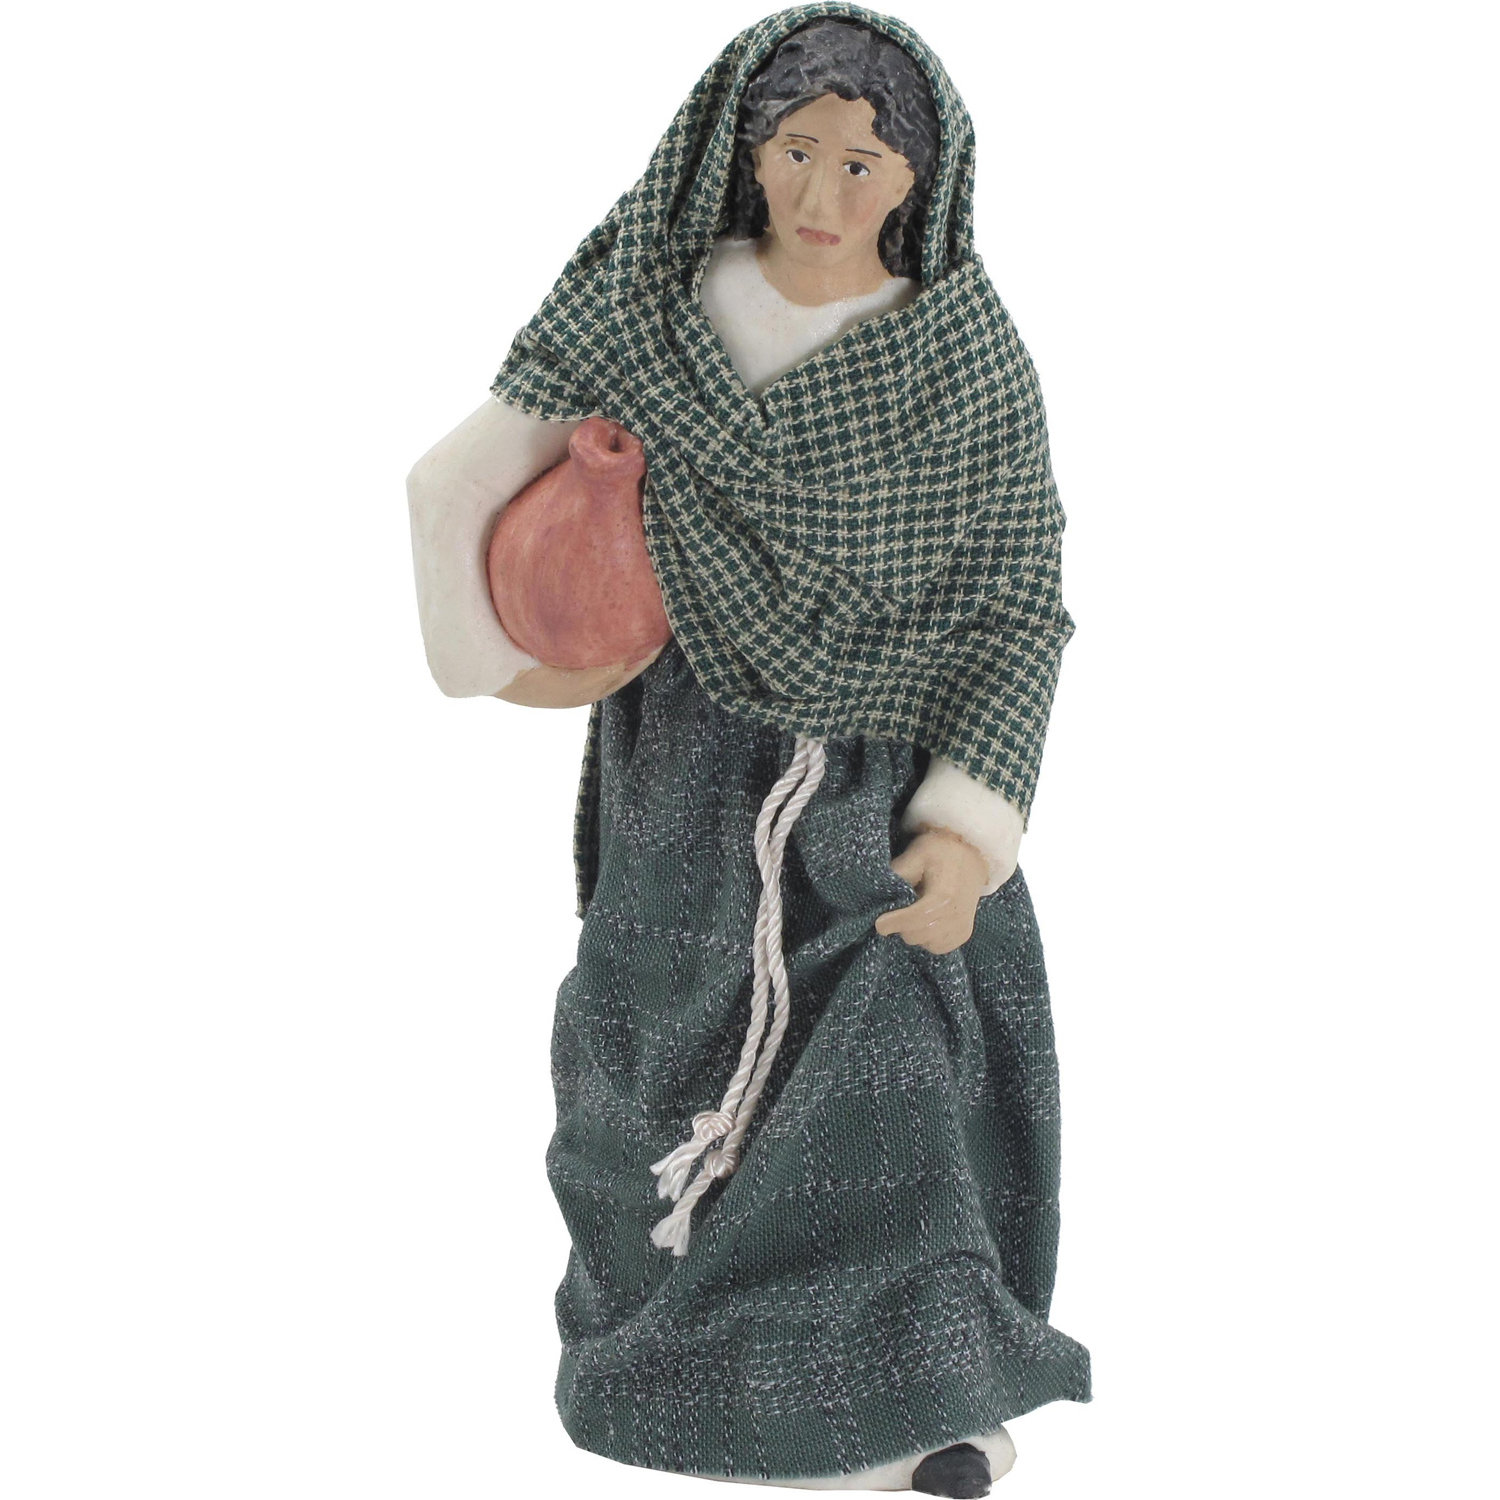 Nativity Figure - Leah, the Innkeeper's Wife